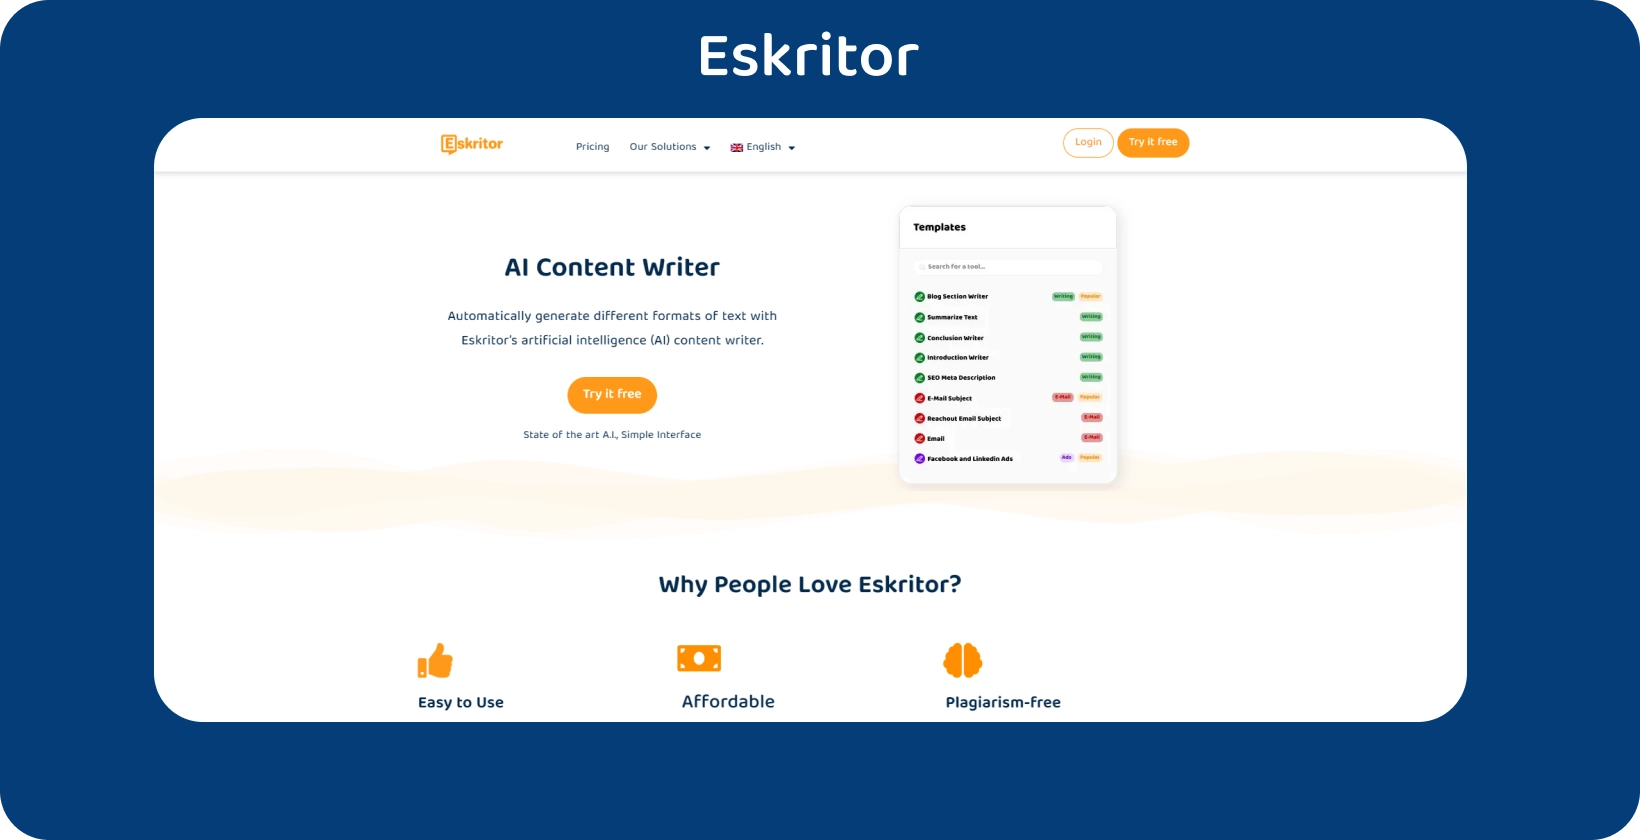 La interfaz del editor de texto AI de Eskritor está lista para generar texto basado en la entrada del usuario.